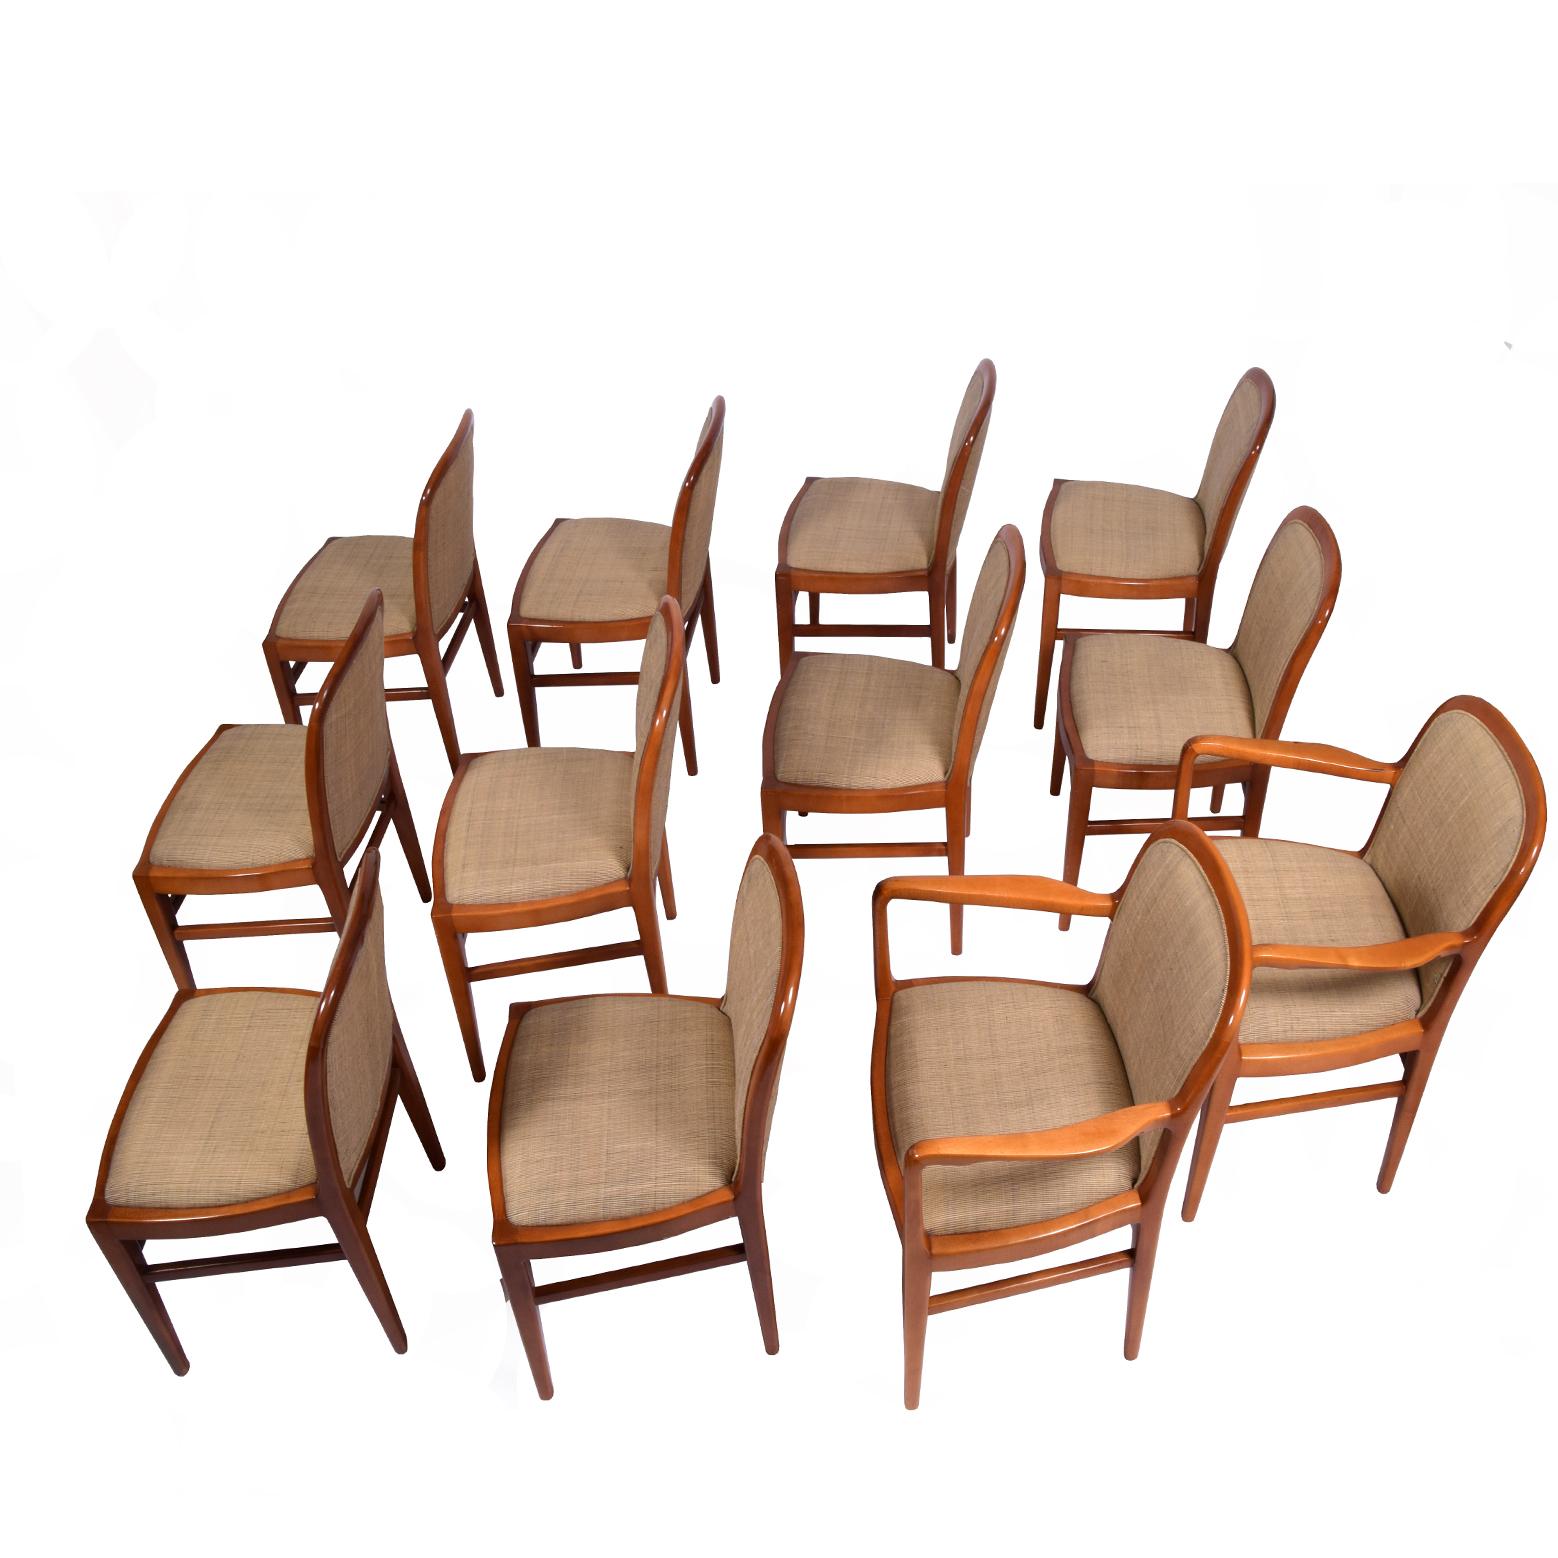 Zwei Armlehnenstühle und 10 Beistellstühle aus massivem Ahornholz, Originalzustand, Label.